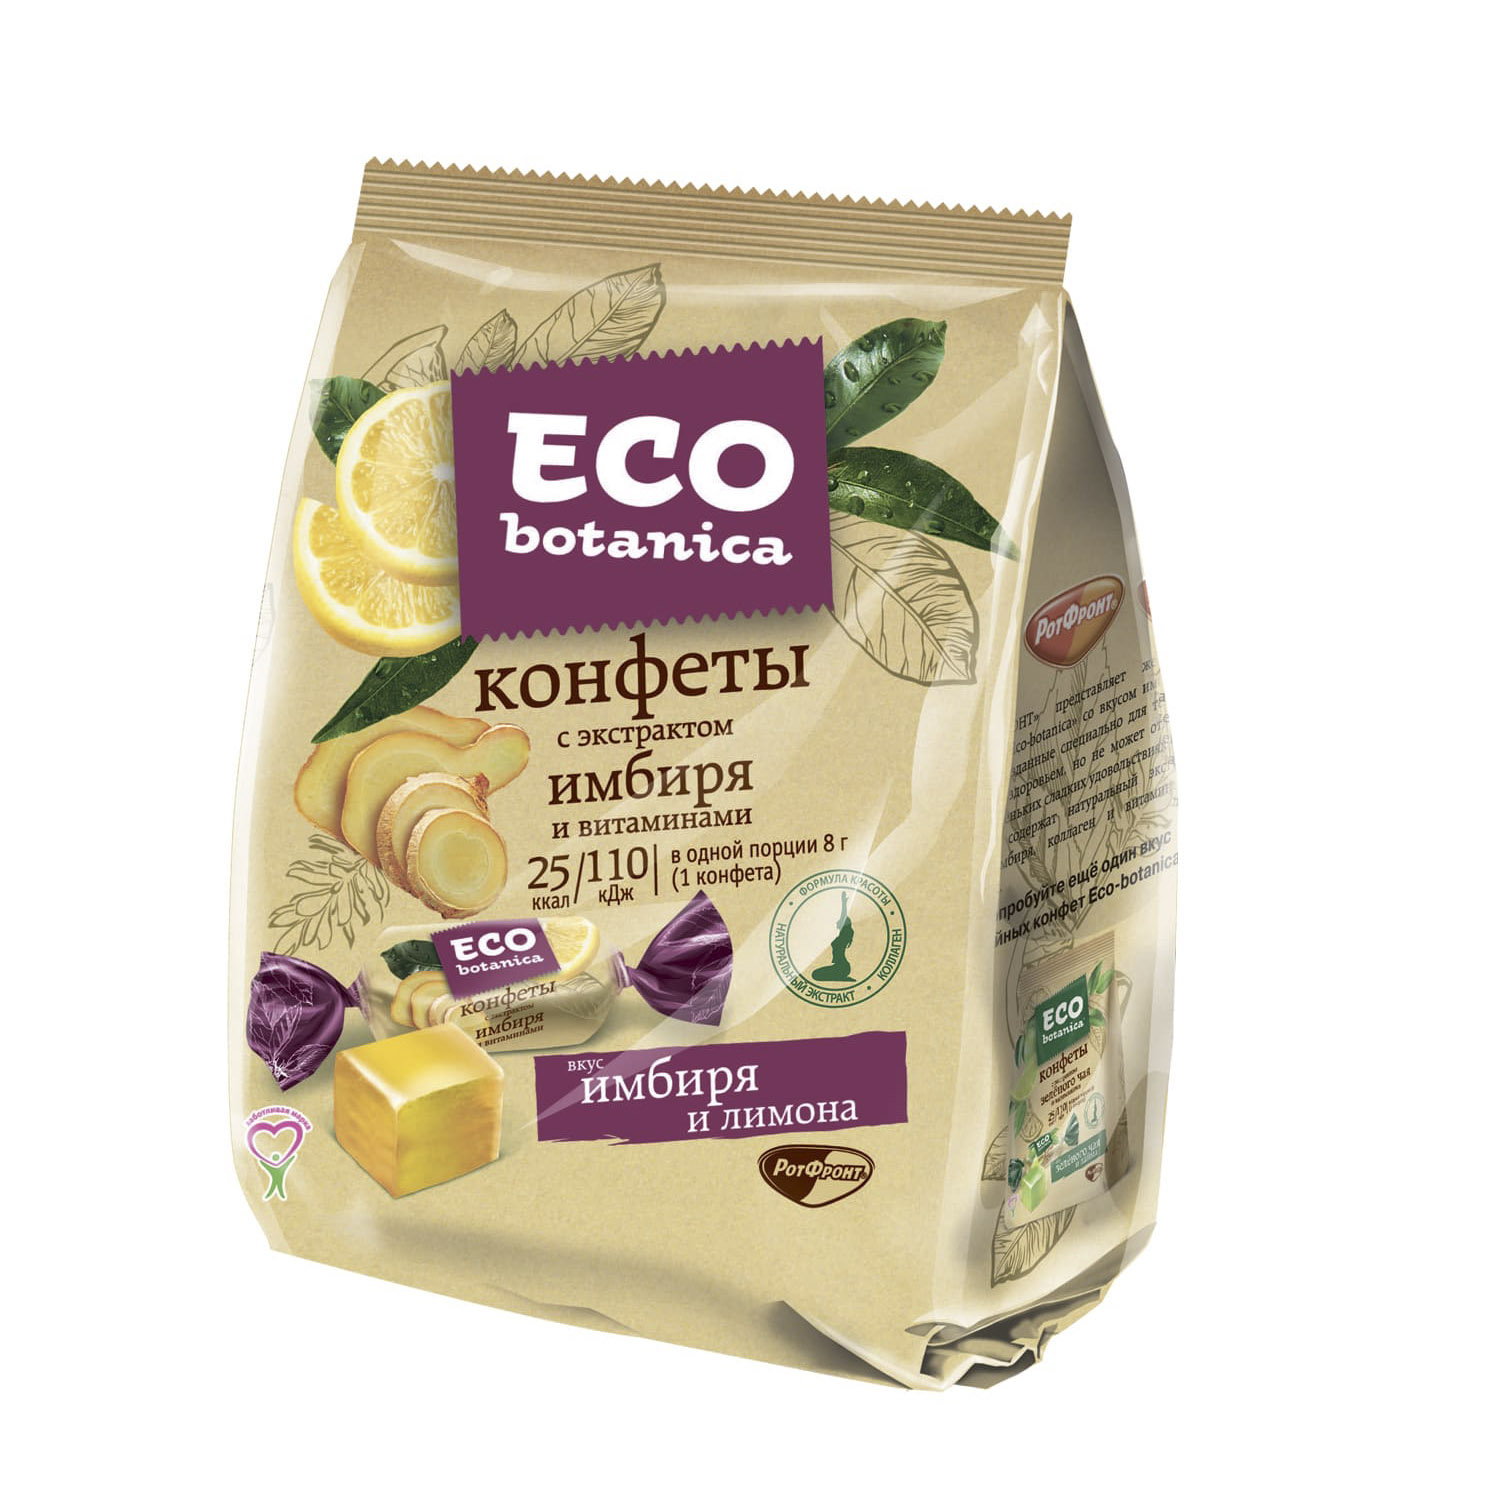 зефир eco botanica 250г с ванильным вкусом и витаминами Конфеты Eco botanica с экстрактом имбиря и витаминами 200 г